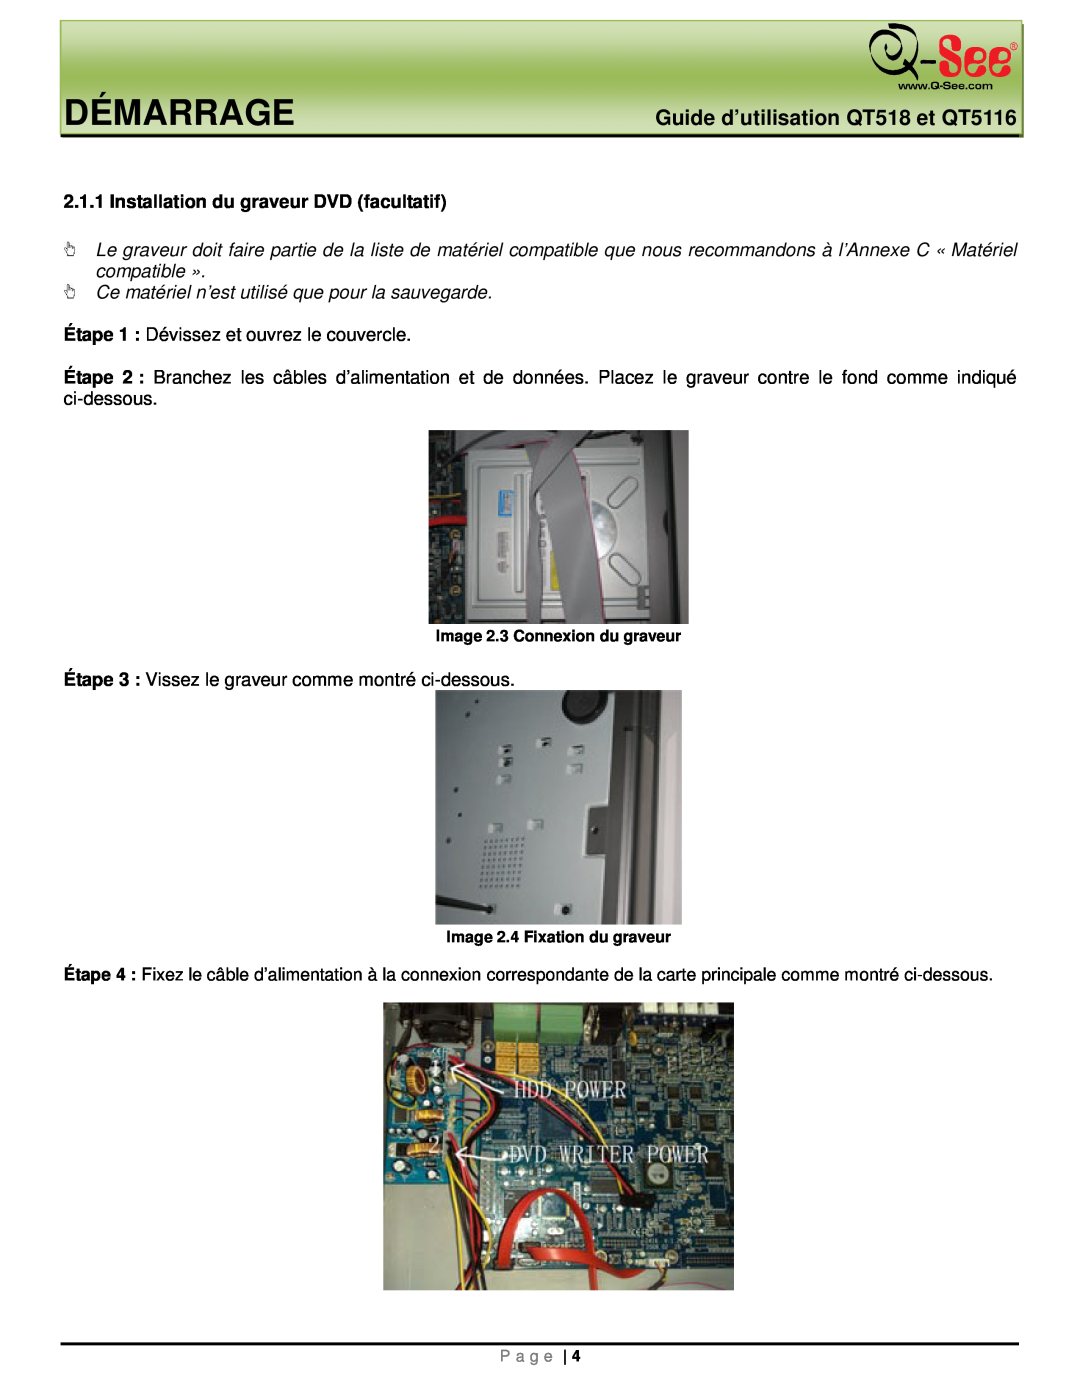 Q-See manual Démarrage, Guide d’utilisation QT518 et QT5116, Installation du graveur DVD facultatif 